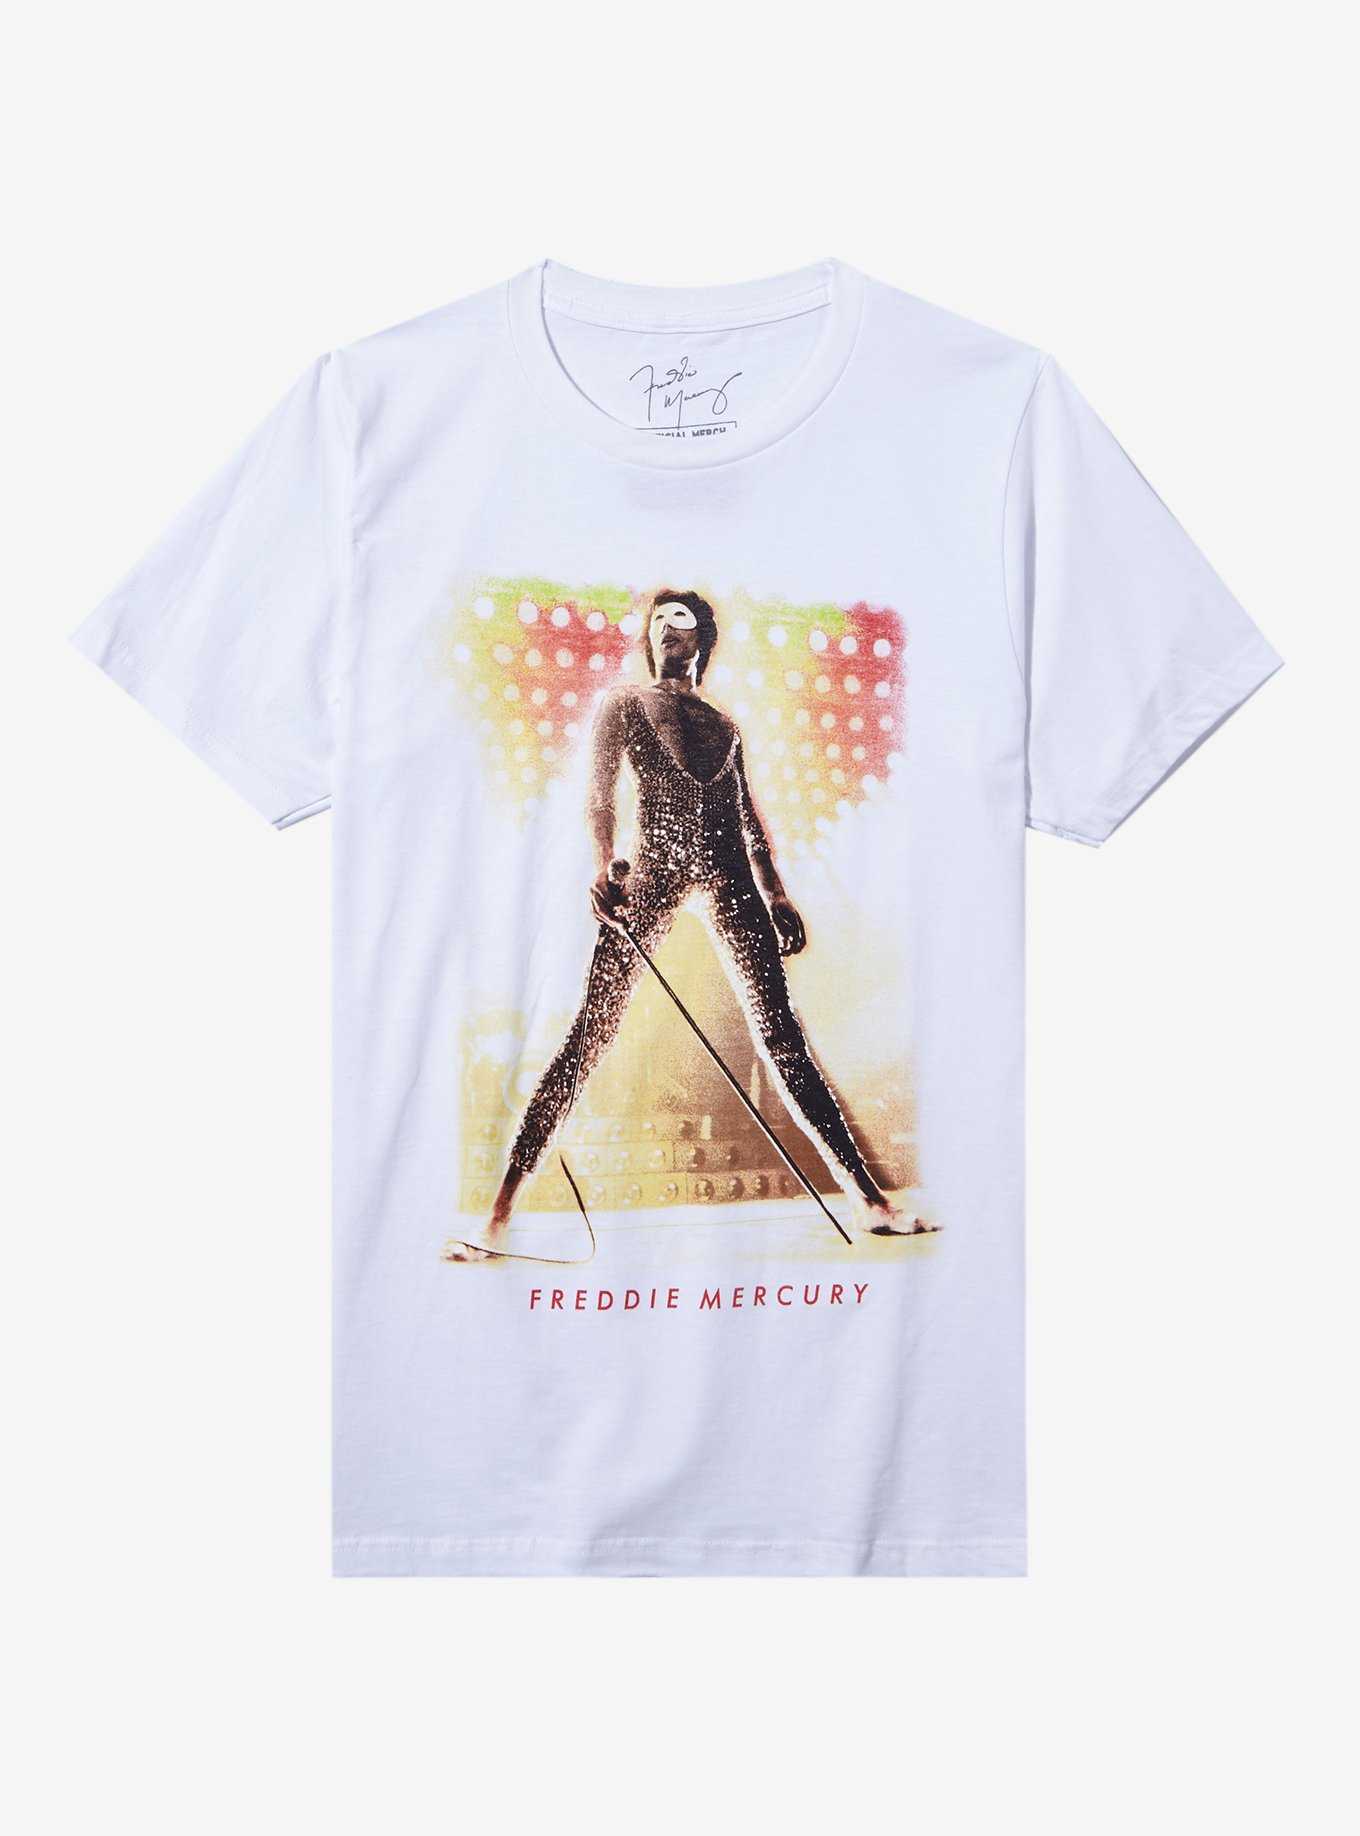 Queen Freddie Mercury Portrait Boyfriend Fit Girls T-Shirt, , hi-res